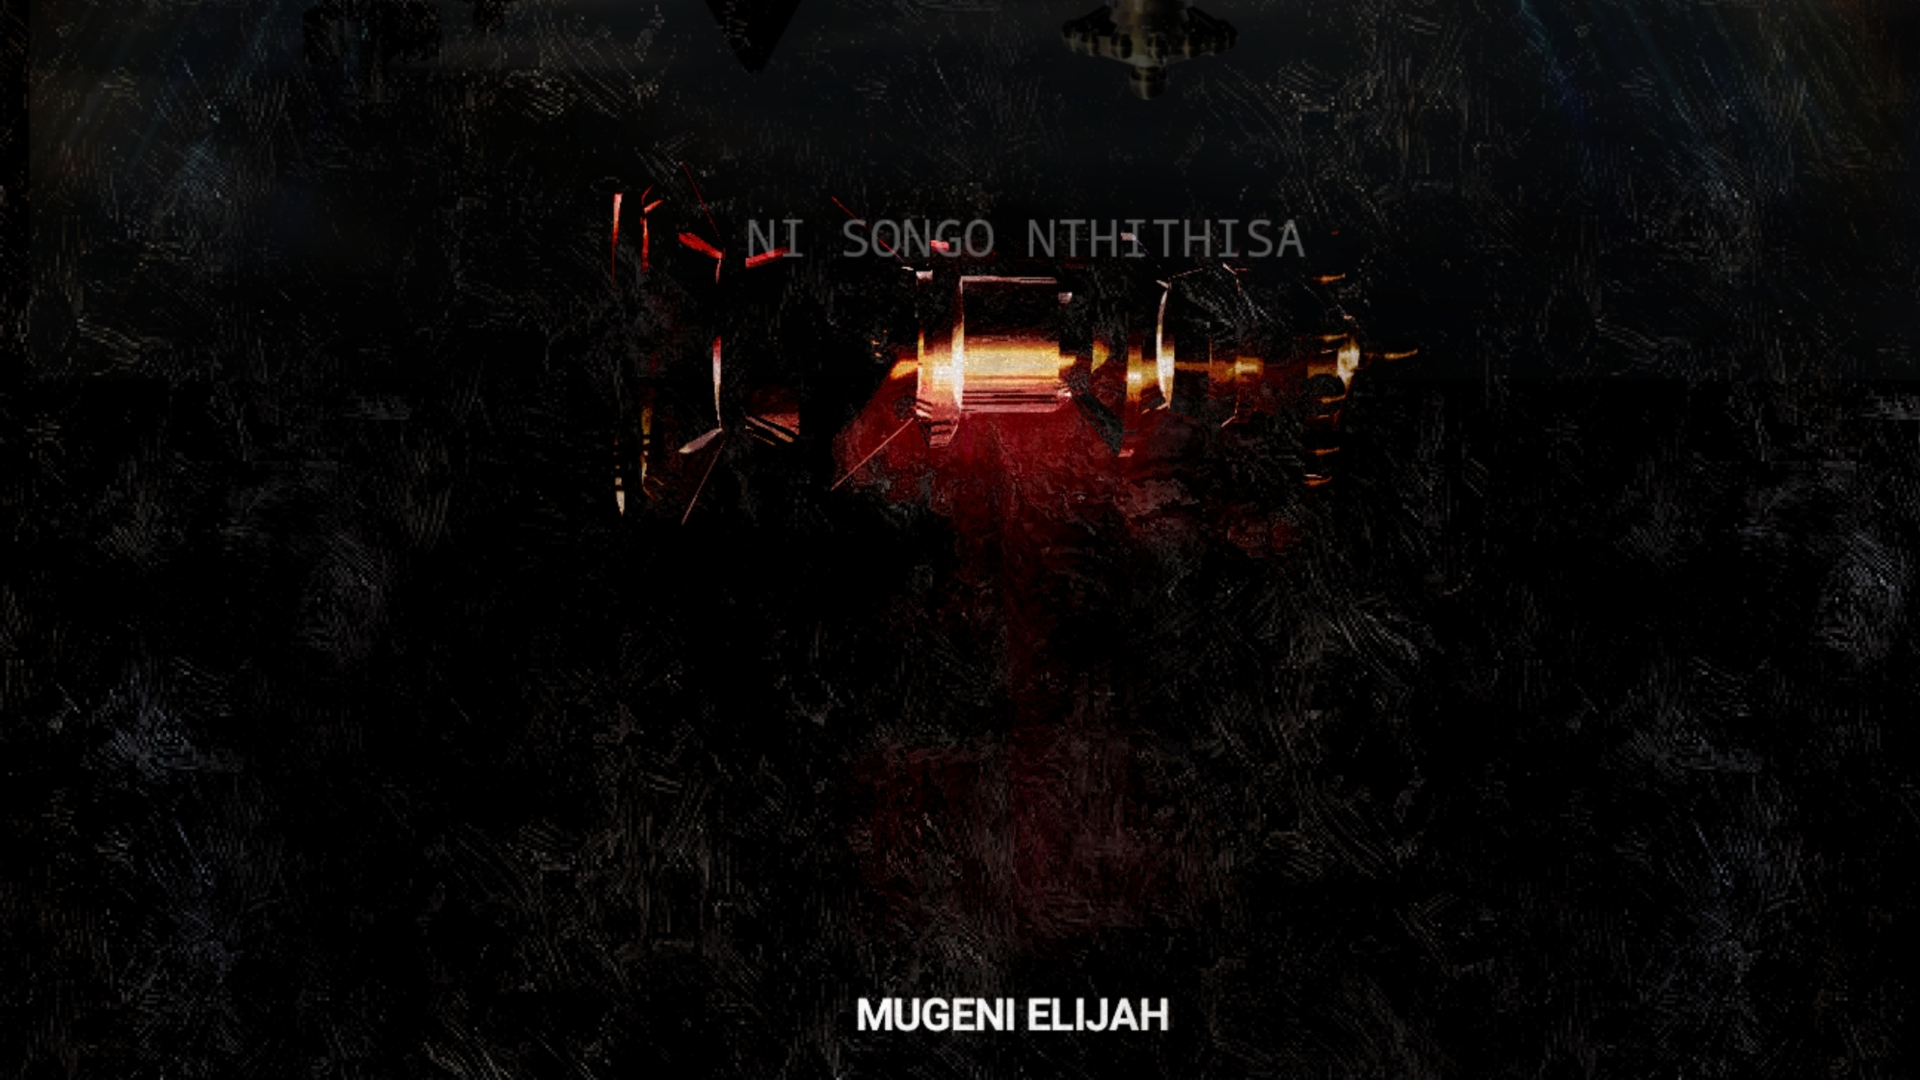 Mugeni Elijah Ni songo nthithisa cover artwork